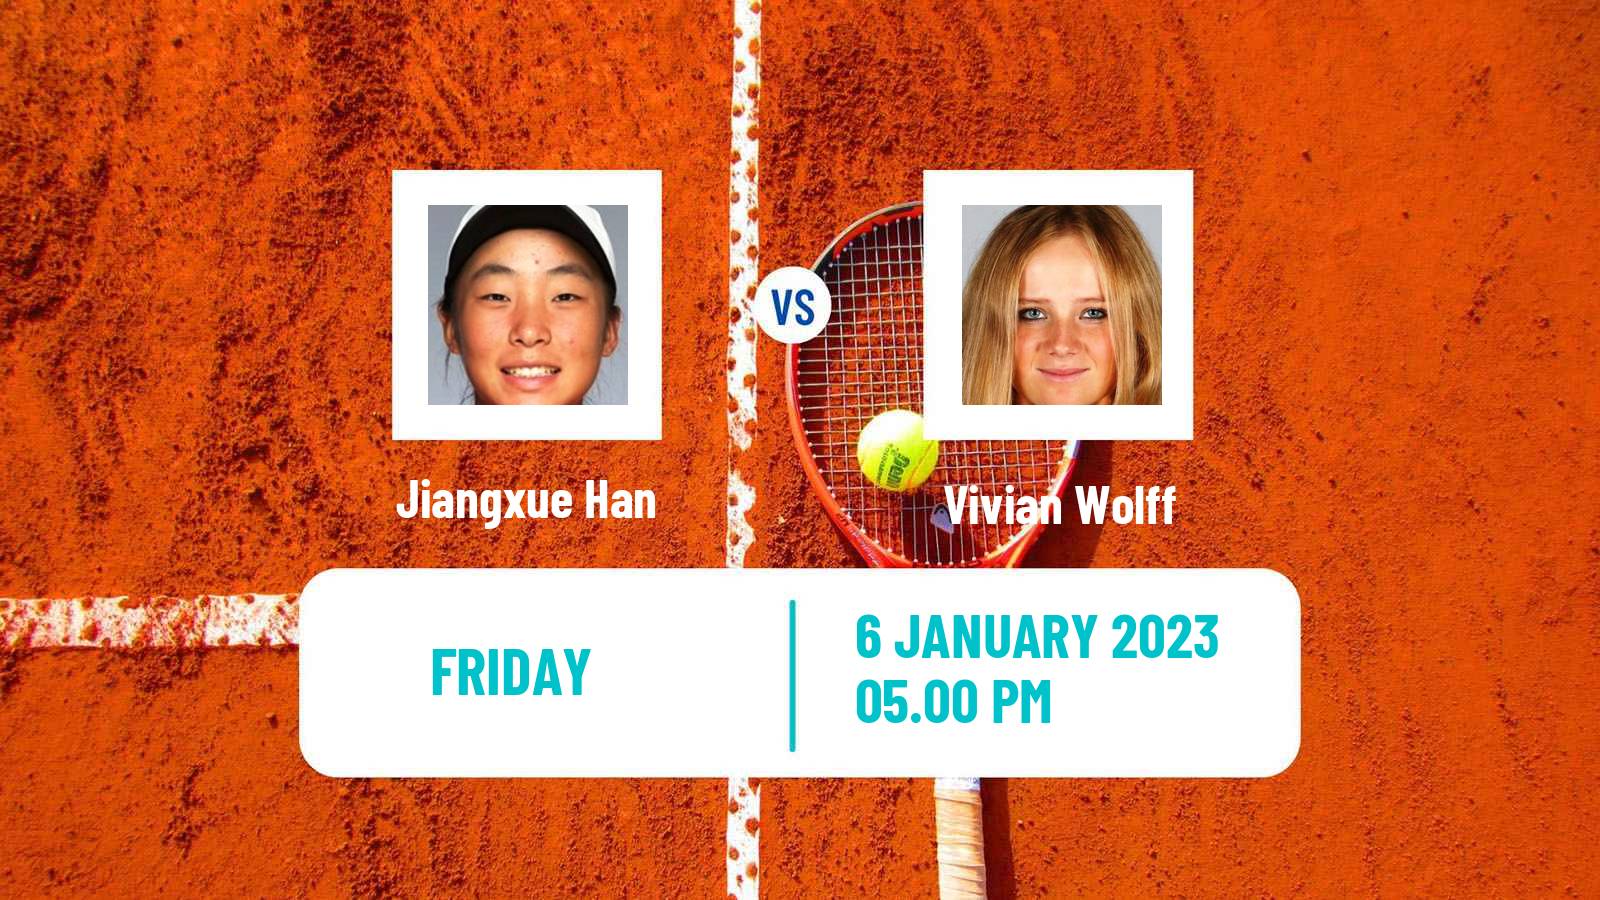 Tennis ITF Tournaments Jiangxue Han - Vivian Wolff